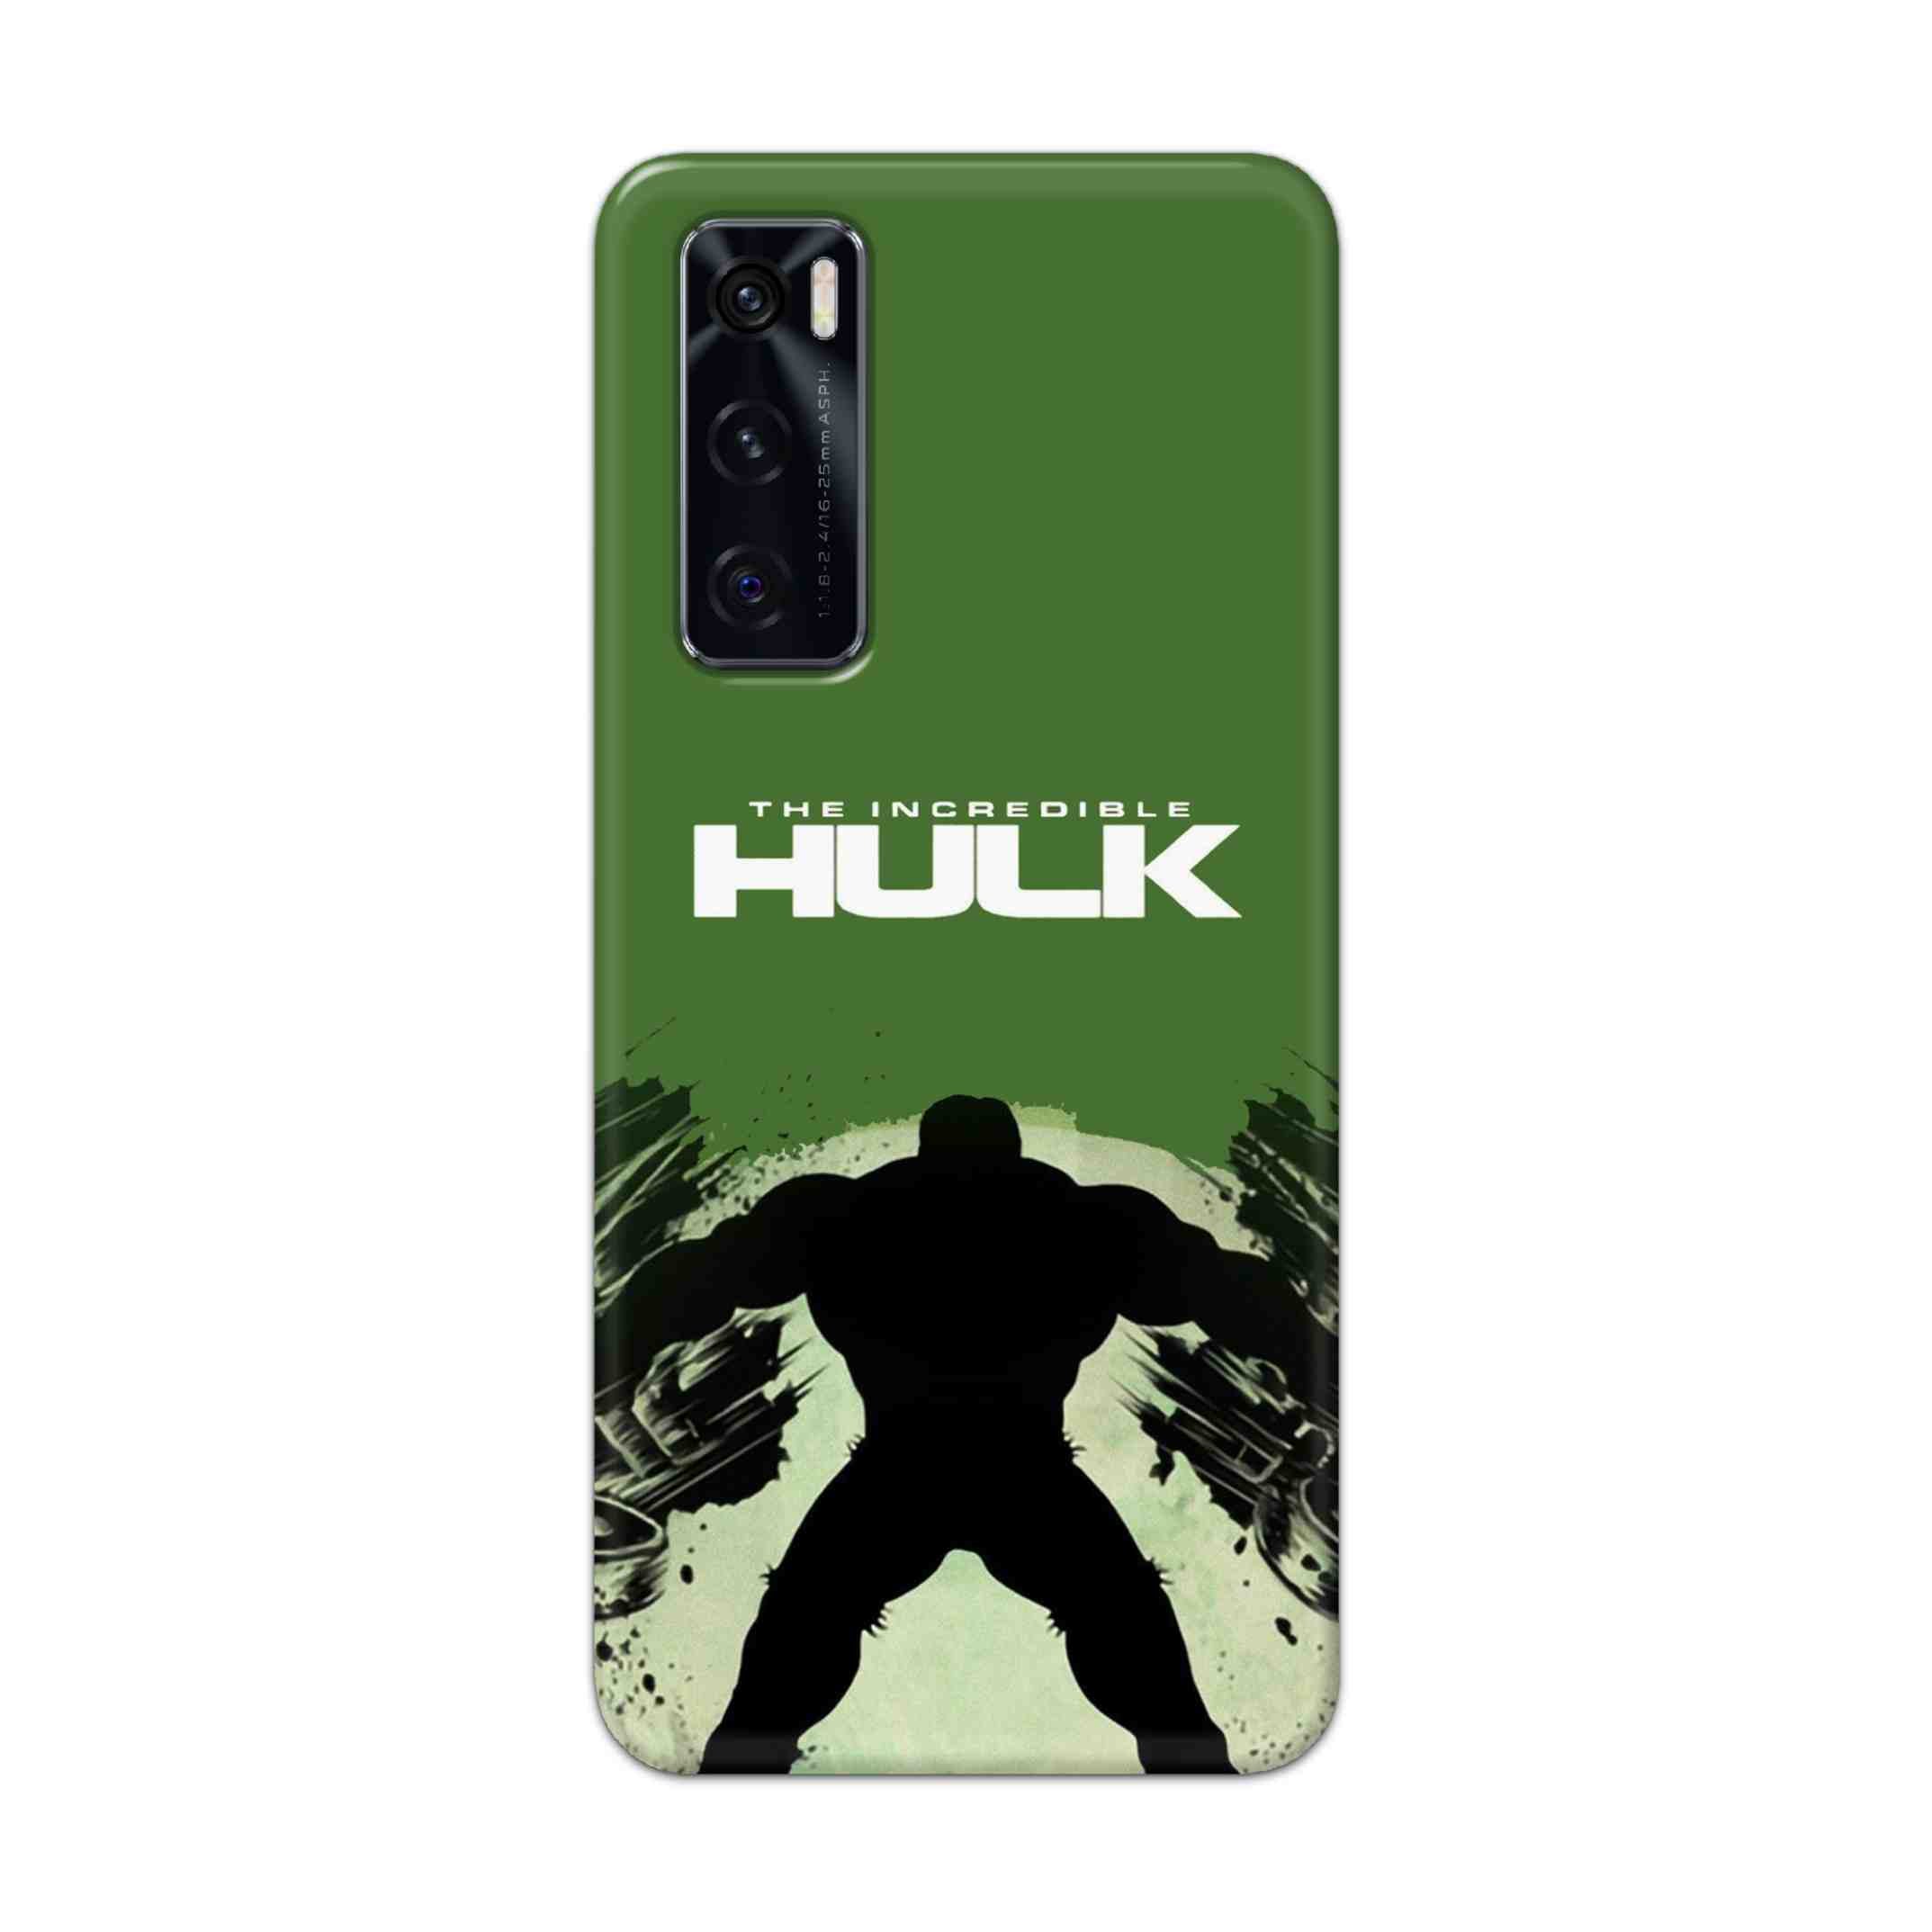 Buy Hulk Hard Back Mobile Phone Case Cover For Vivo V20 SE Online